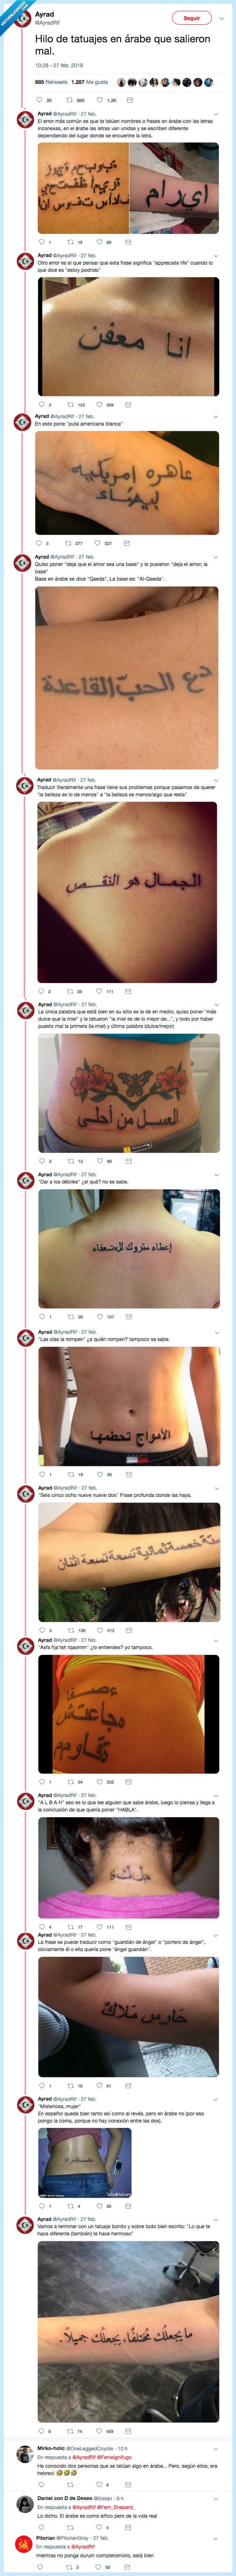 511293 - Tatuajes en árabe que no ponen lo que debería de poner, por @AyradRif